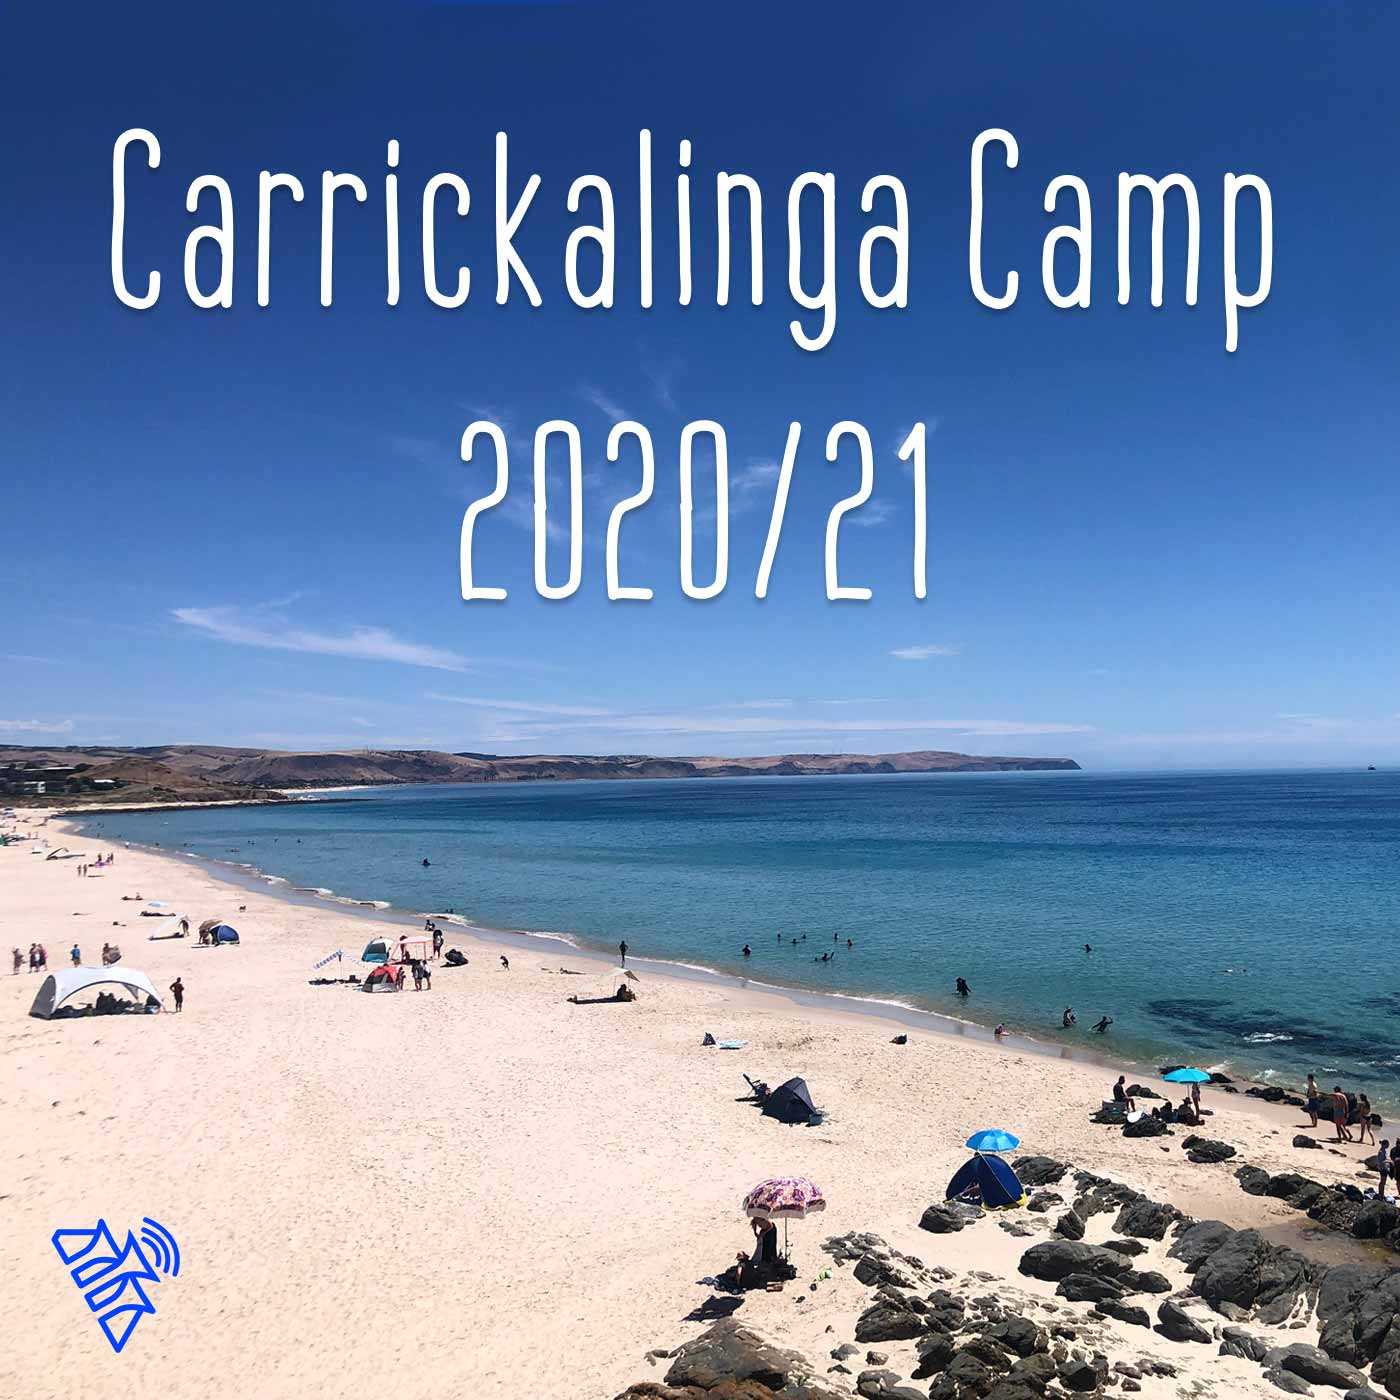 Change (Carrickalinga Camp Dec 2020)